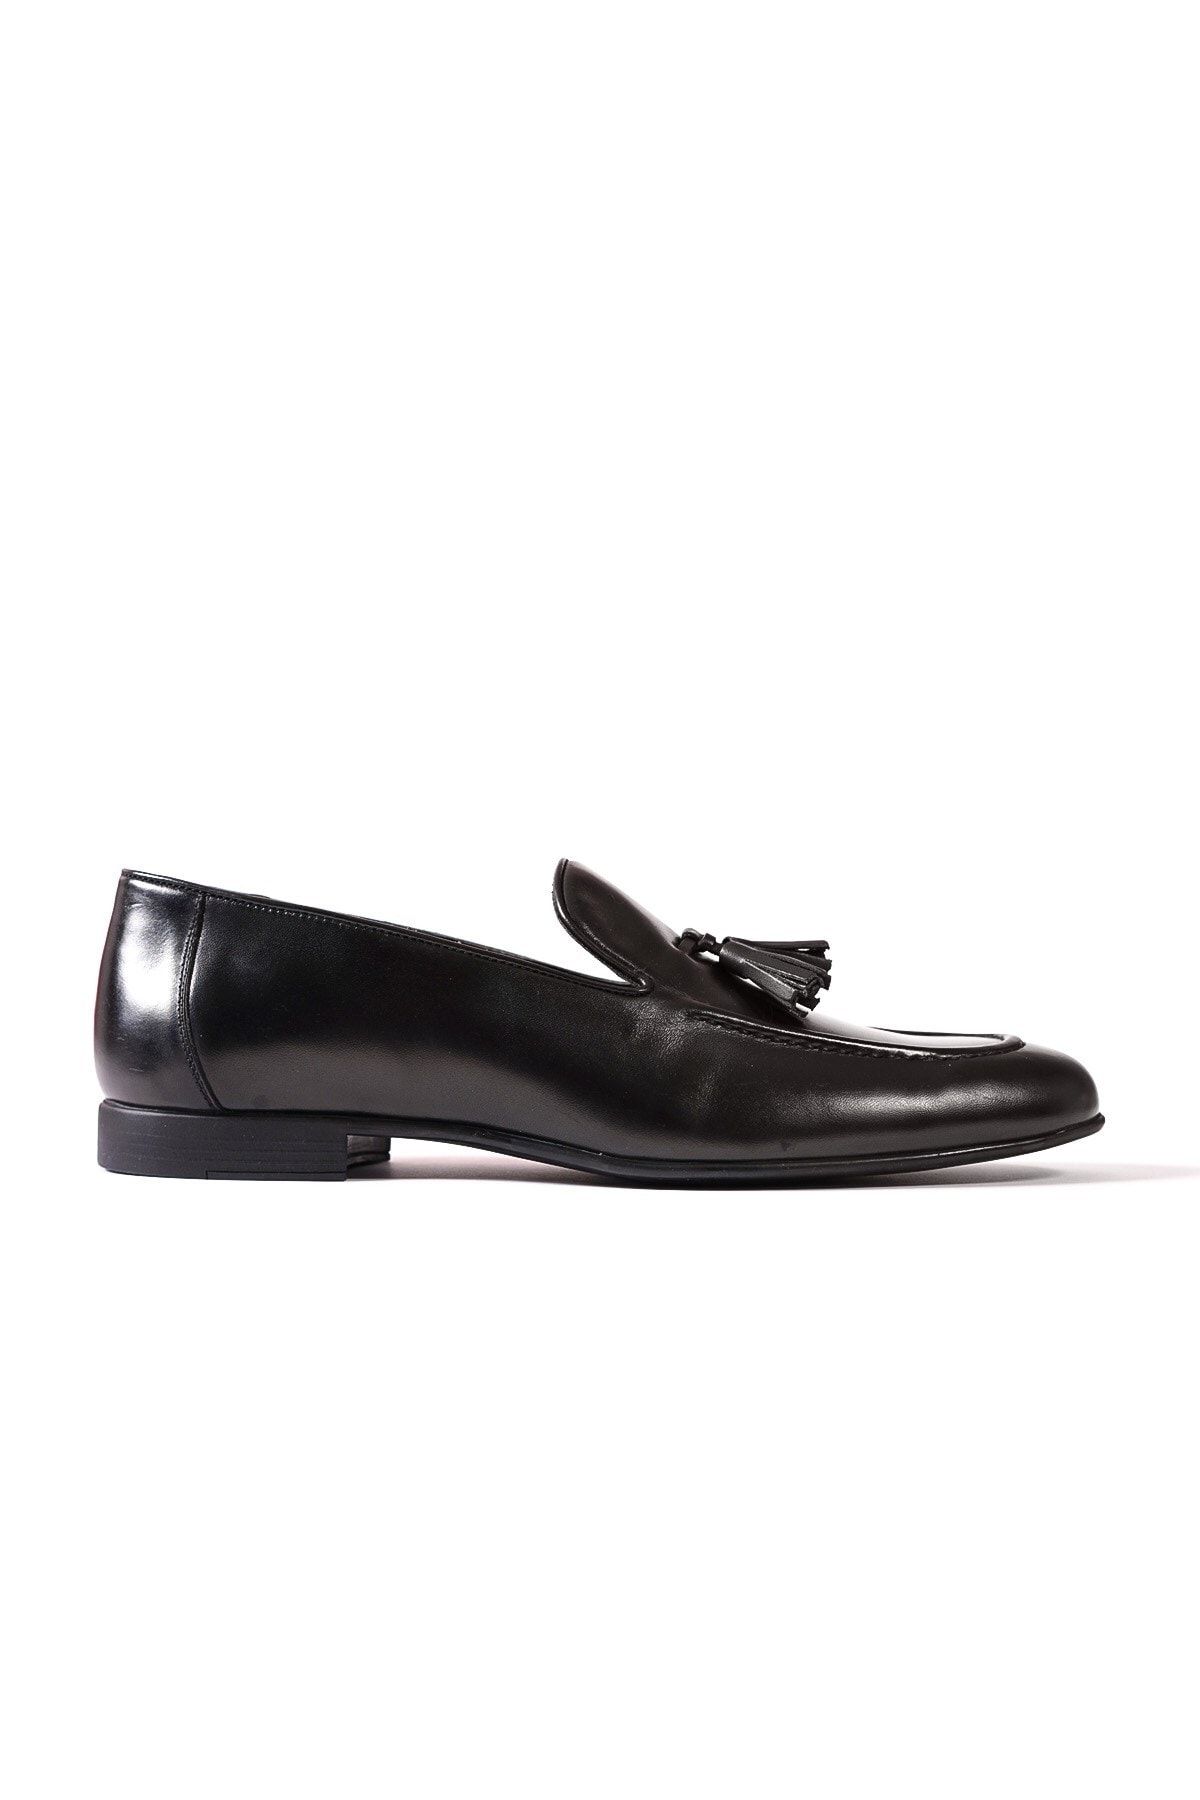 VATANSAN Seranad Siyah Deri Klasik Erkek Ayakkabı